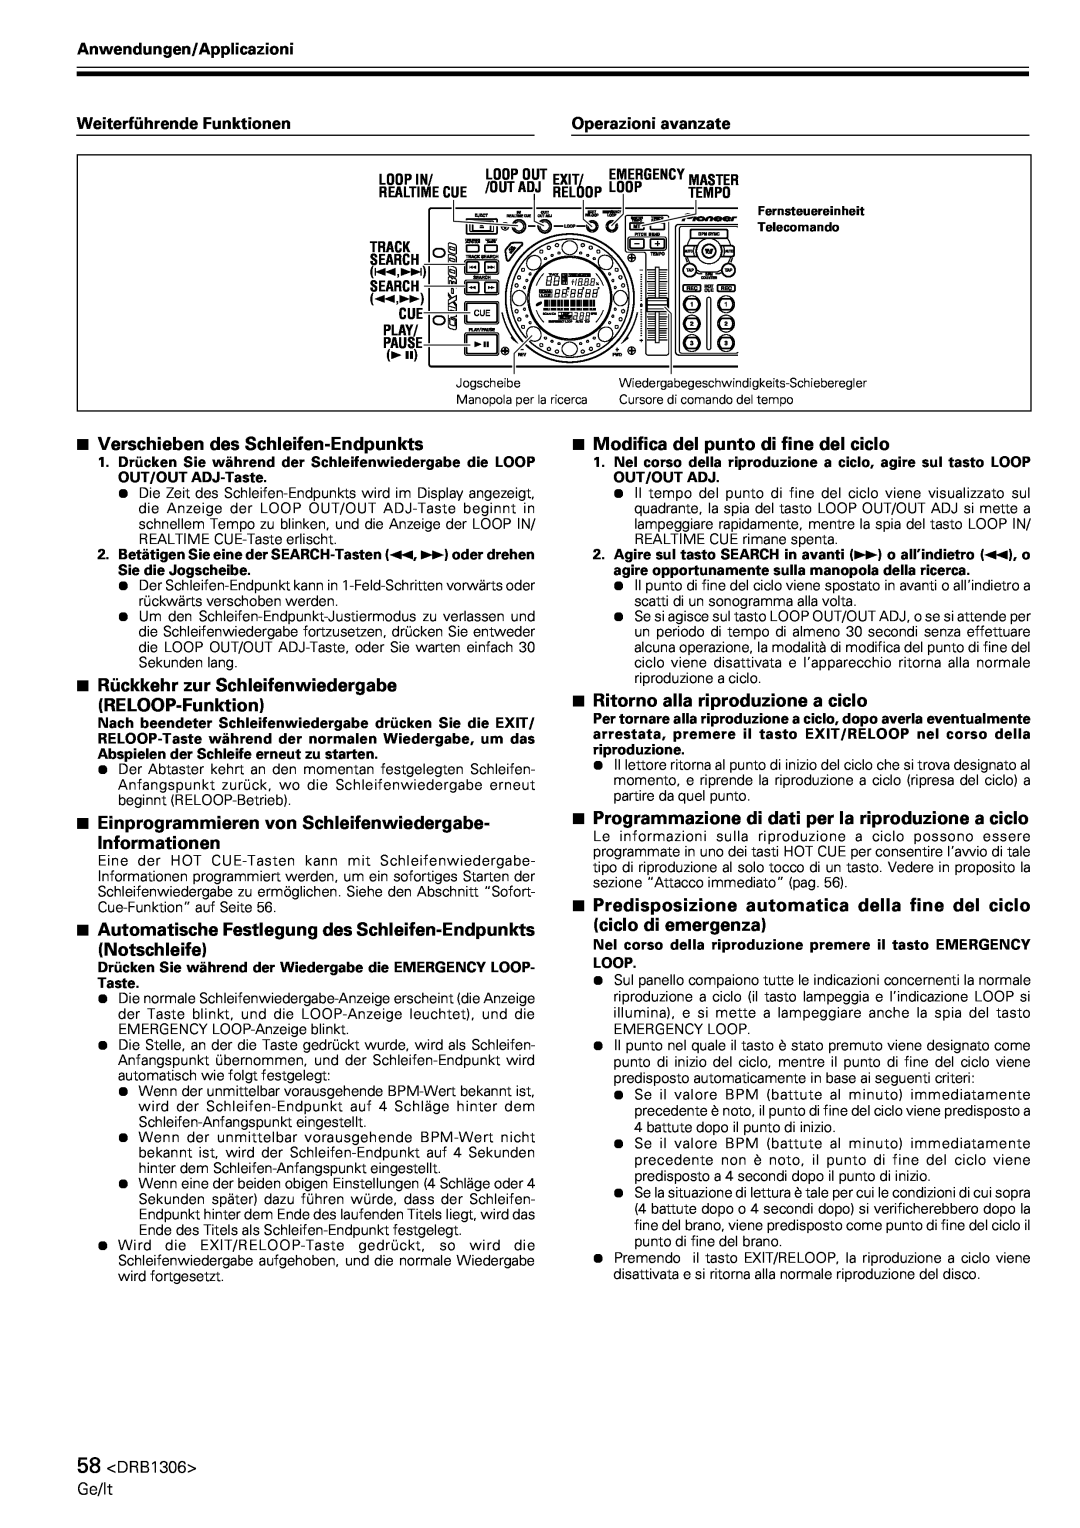 Pioneer CMX-3000 operating instructions 7Verschieben des Schleifen-Endpunkts 